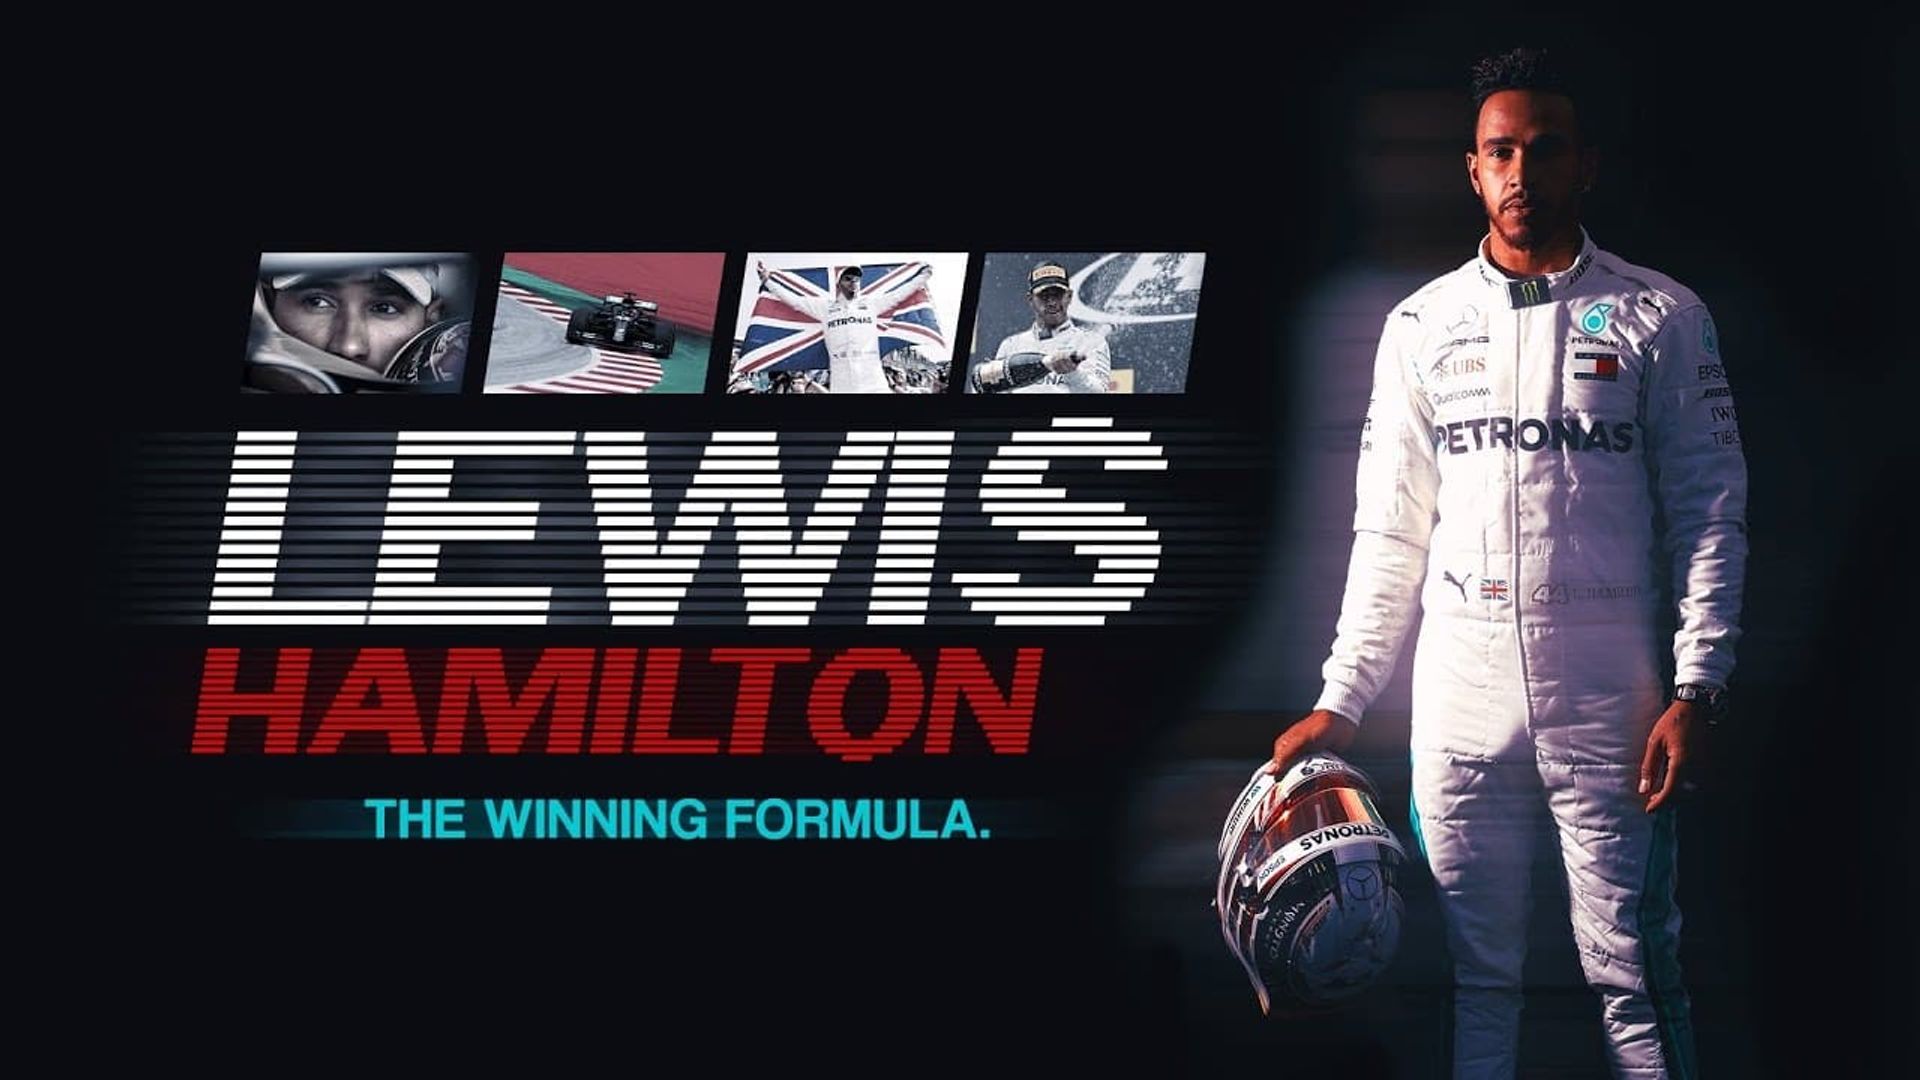 Lewis Hamilton: The Winning Formula background